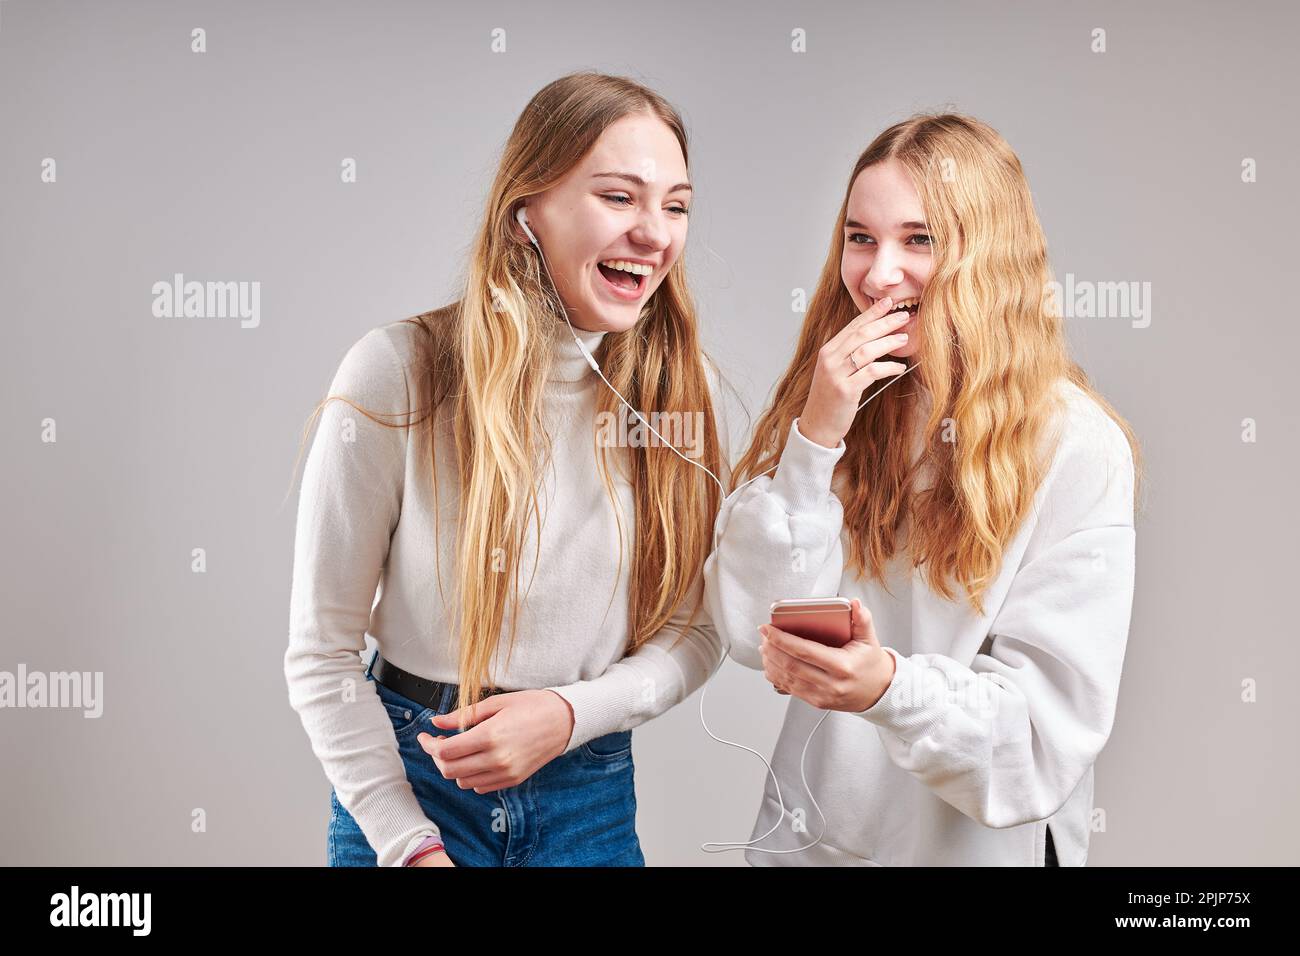 Junge Frauen Mädchen hören zusammen Musik Streaming-Inhalte Spaß beim Ansehen von Videos genießen Video-Chat mit Freunden reden machen Gesten fac Stockfoto